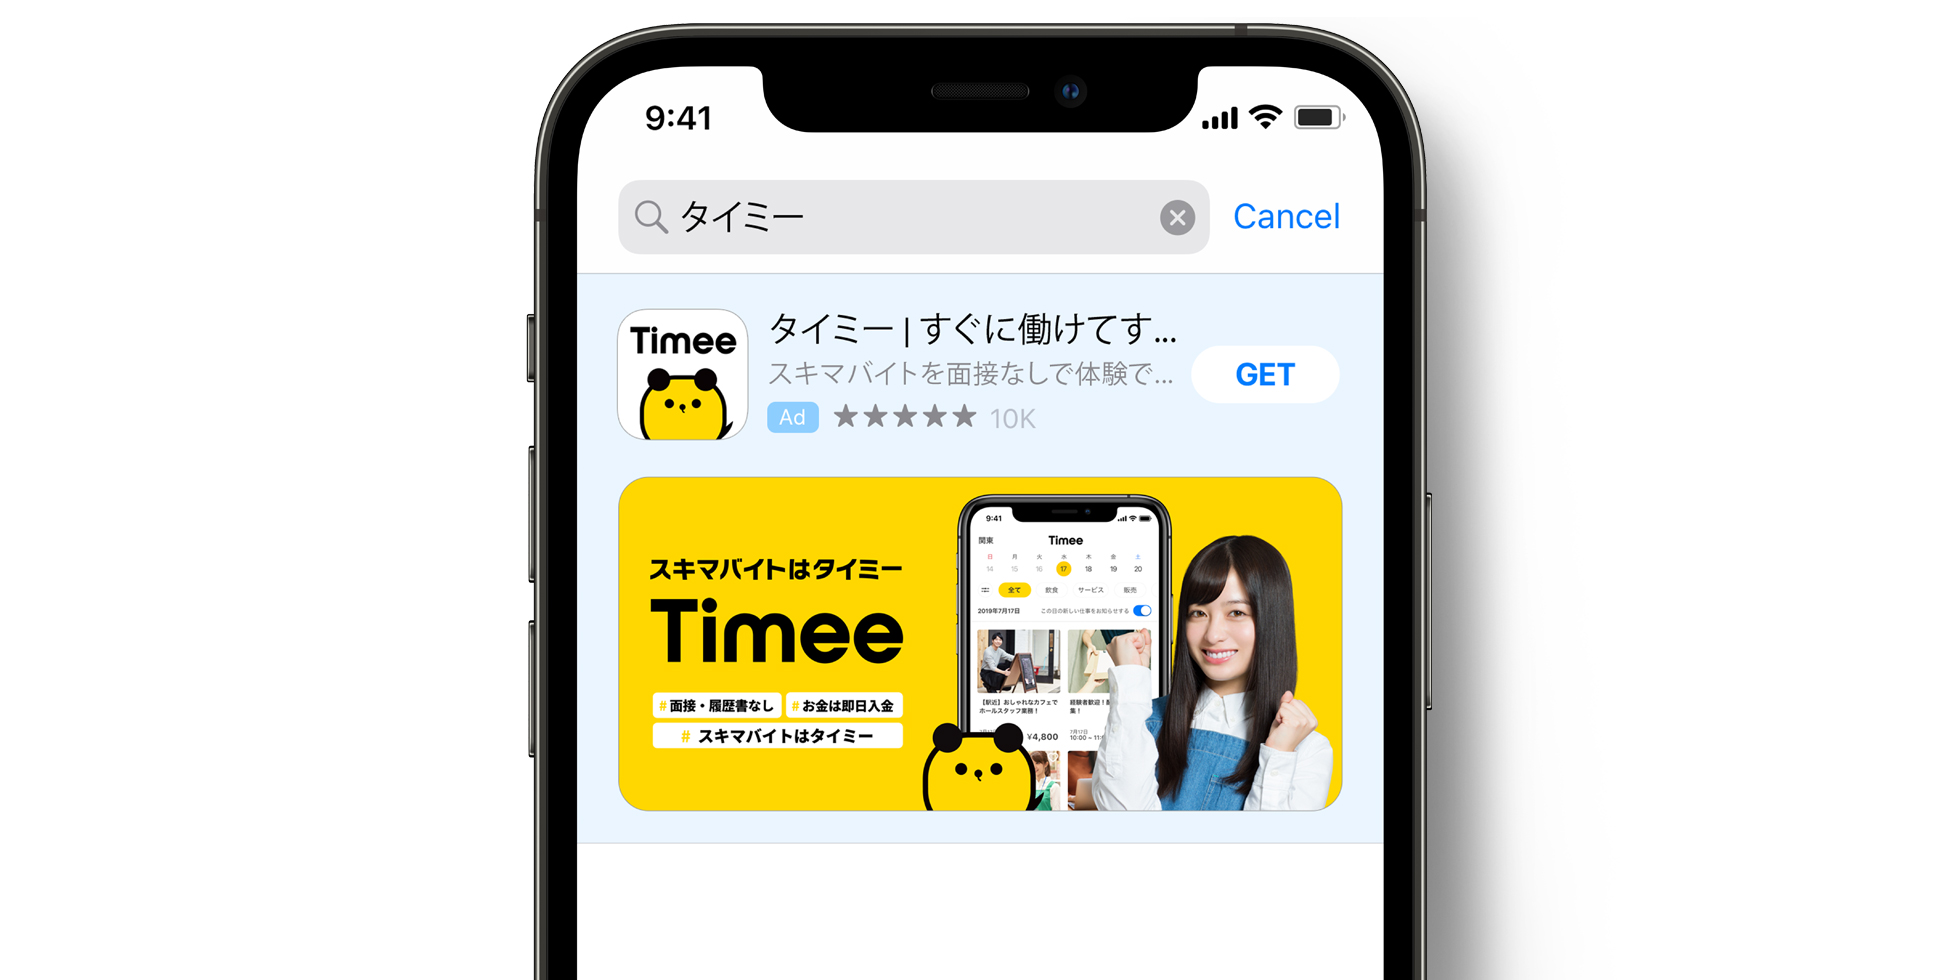 Timee Anzeige im App Store